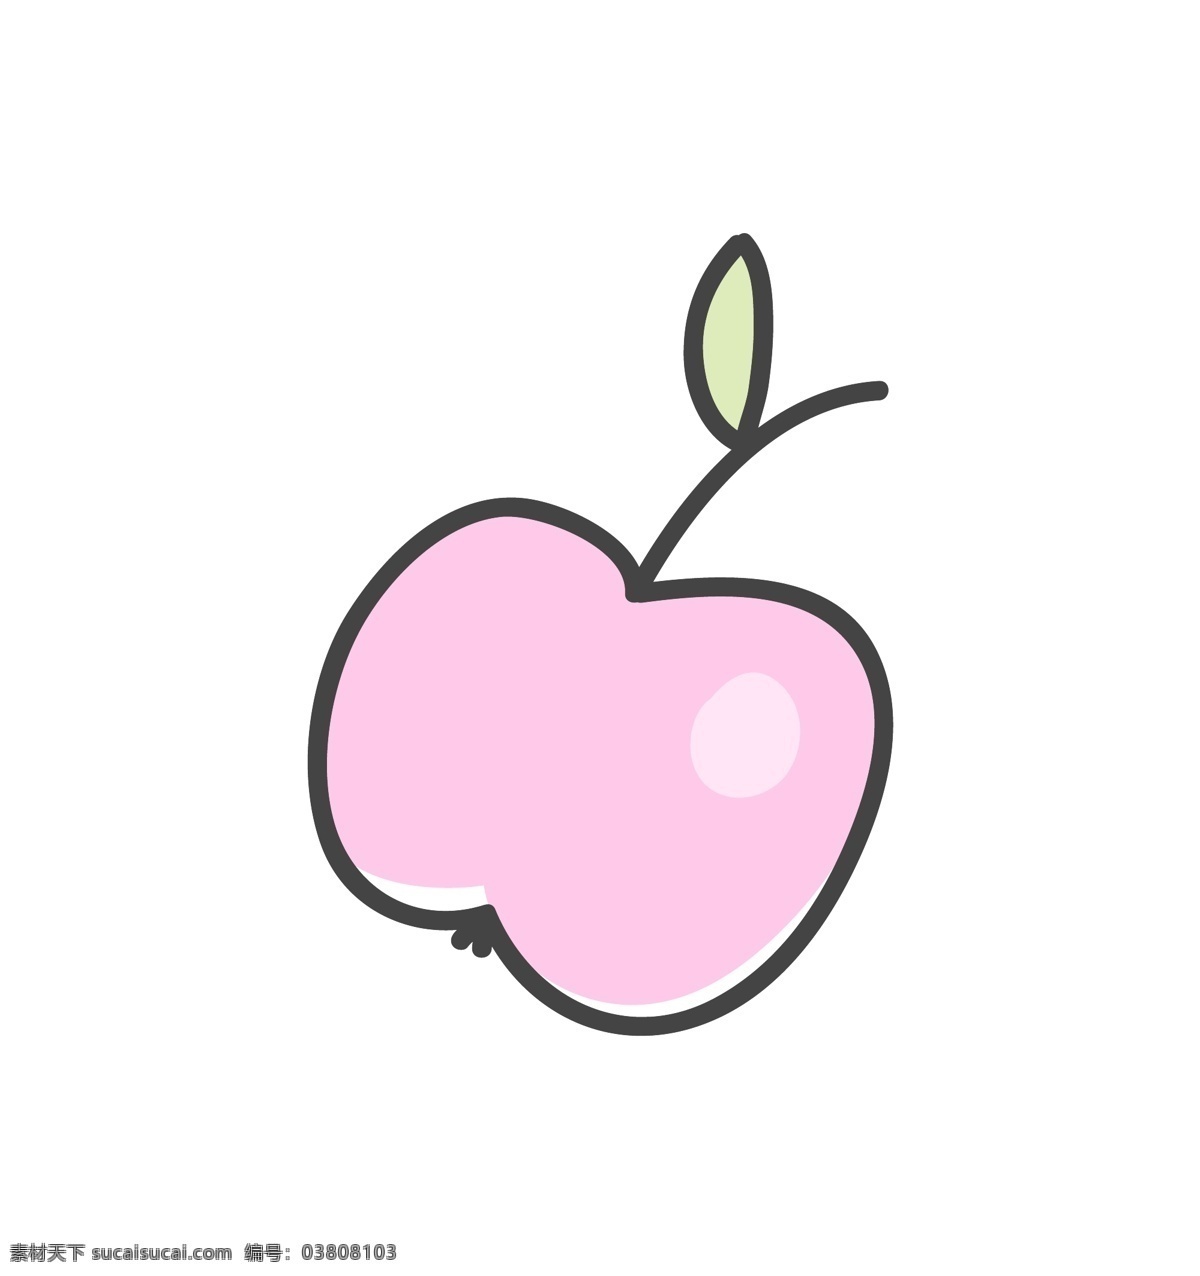 手绘 一个 粉红色 苹果 矢量 卡通 绿叶 平面素材 设计素材 矢量素材 水彩 水果